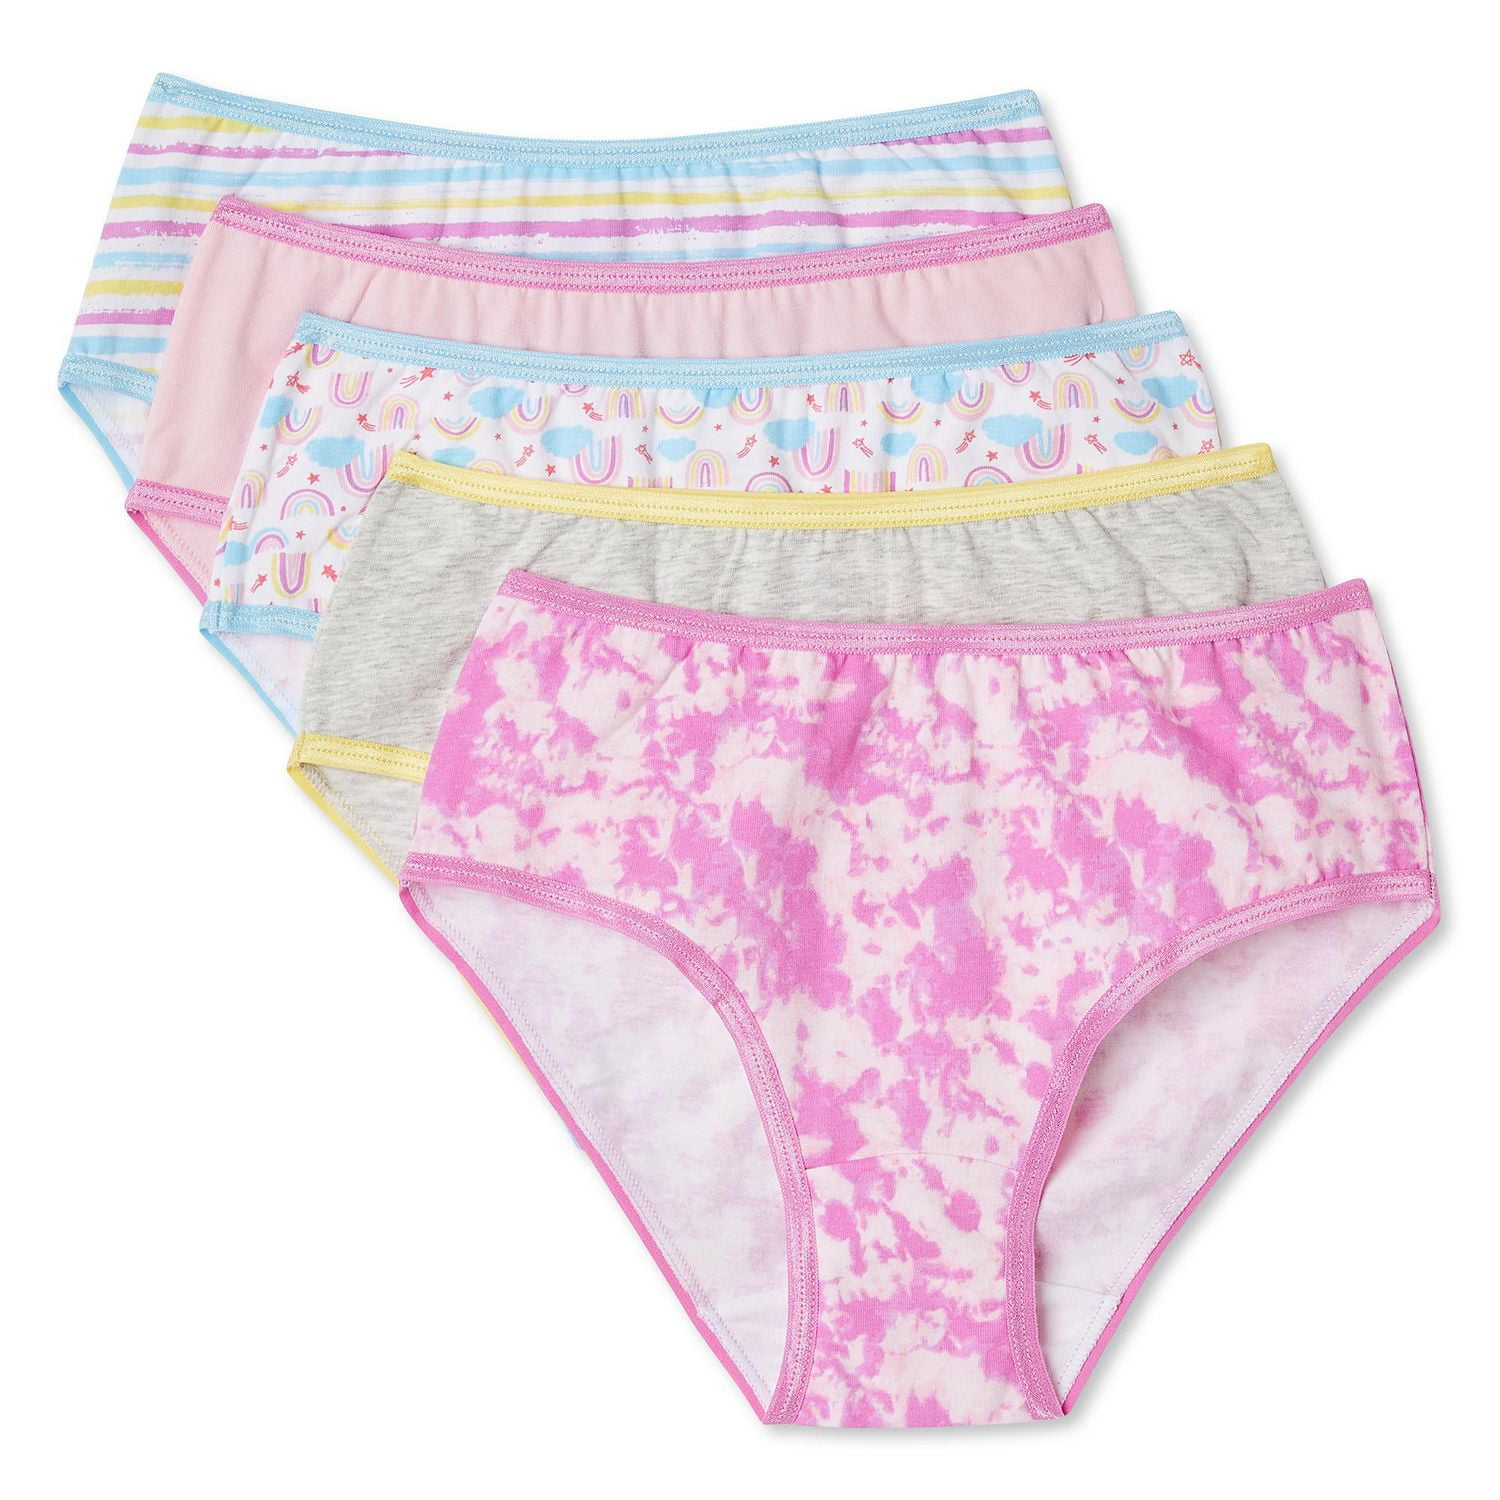 Fun Prints Girls Brief Underwear 3 Pack - Hatley CA